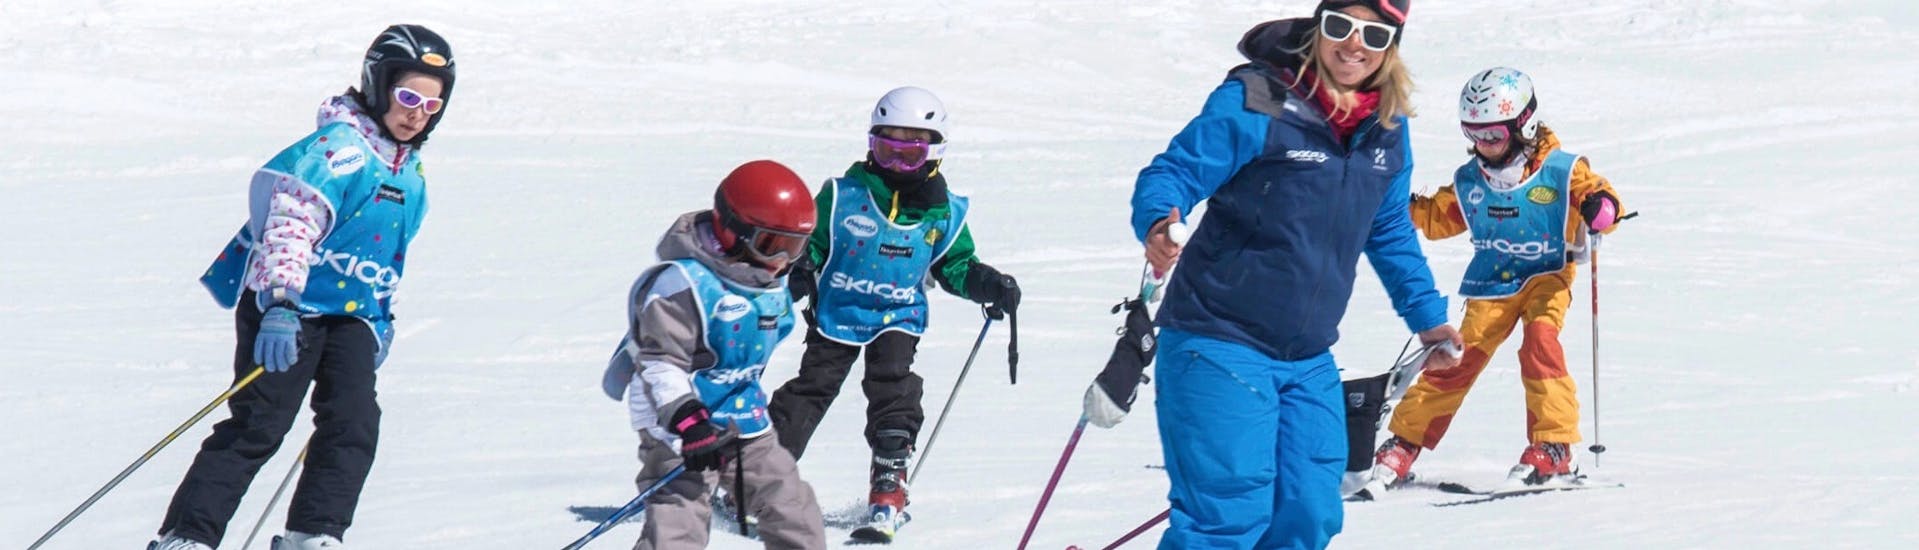 Lezioni di sci per bambini (5-12 anni) - Cool 5 Kids.